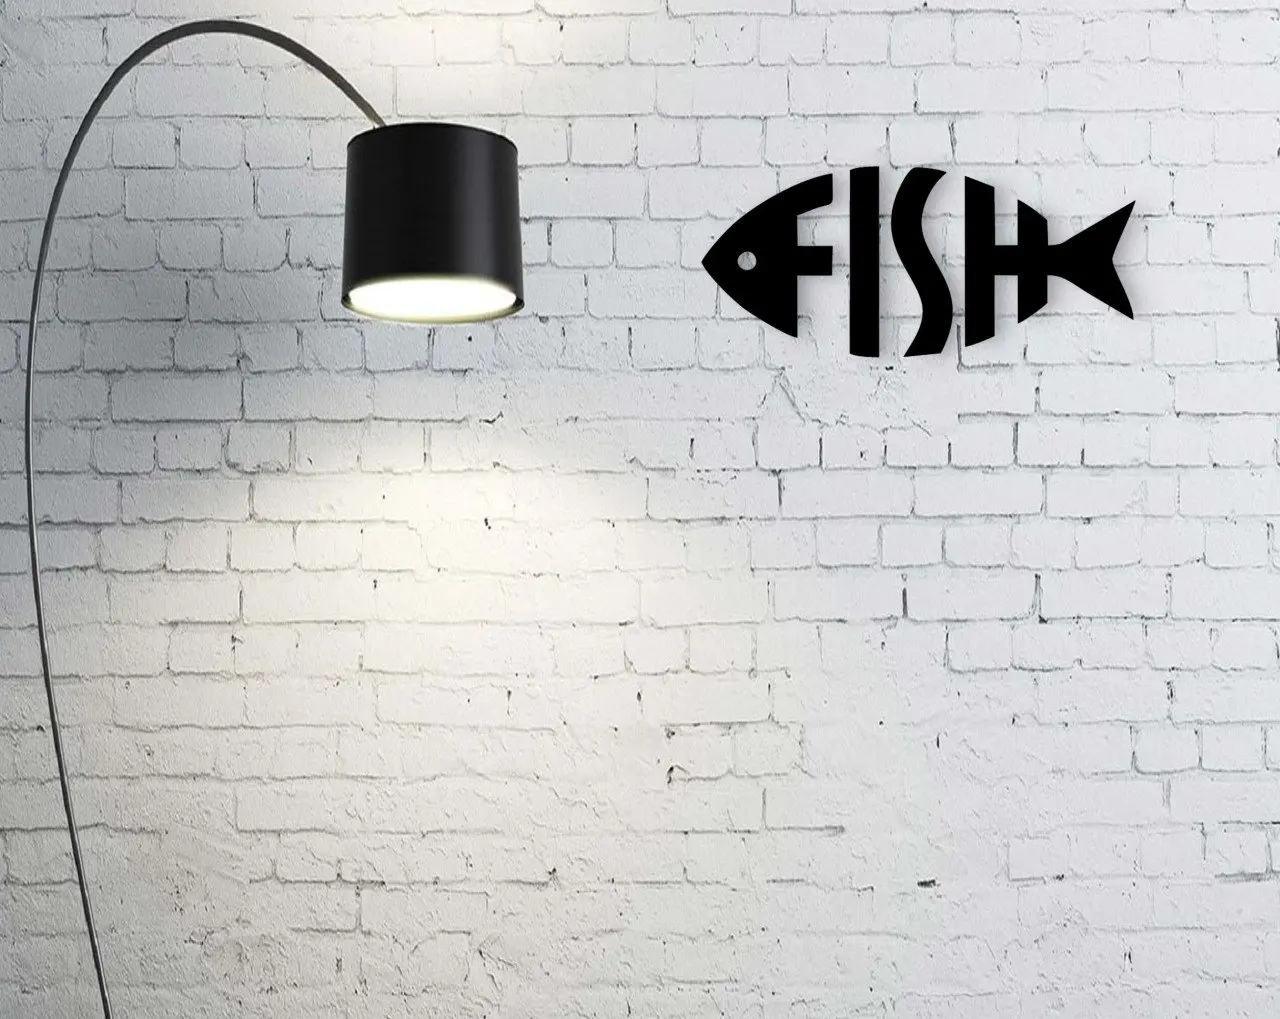 

BK домашний дизайн в виде рыбы деревянная стена постмодерн удобное надежное настенное украшение подарок простой крутой черный цвет